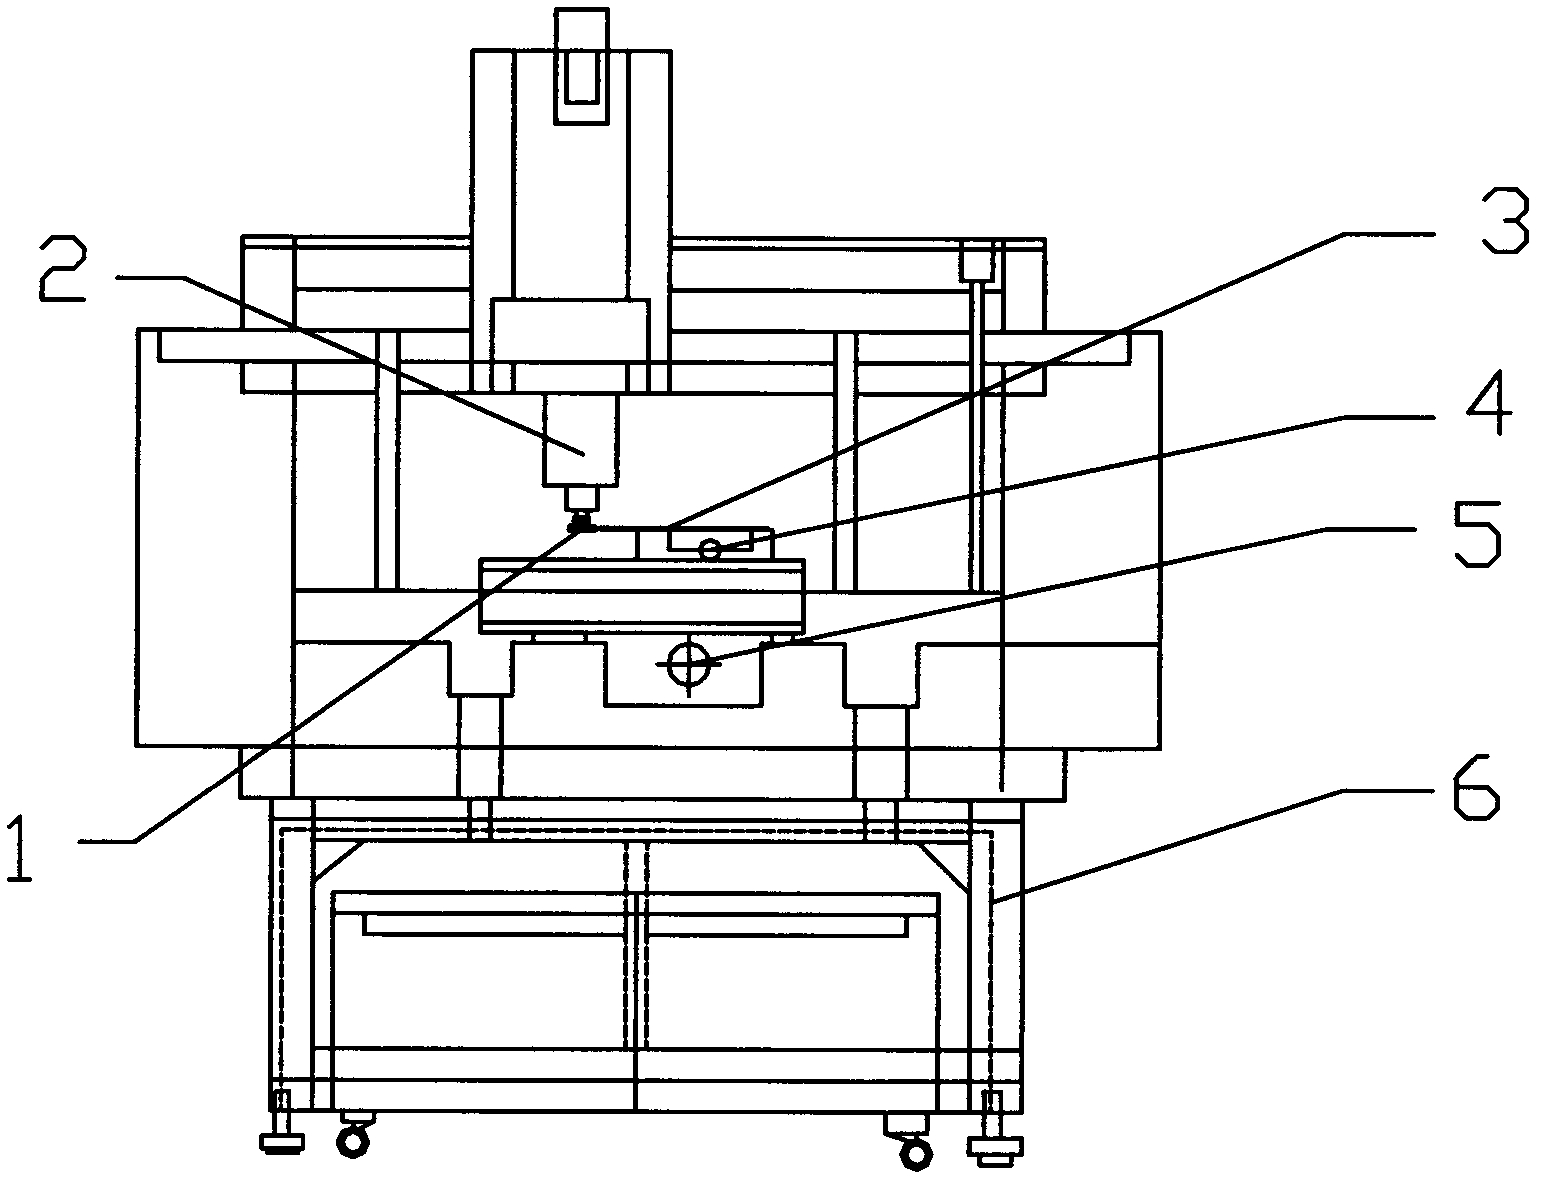 Wafer chamfering machine and wafer machining method